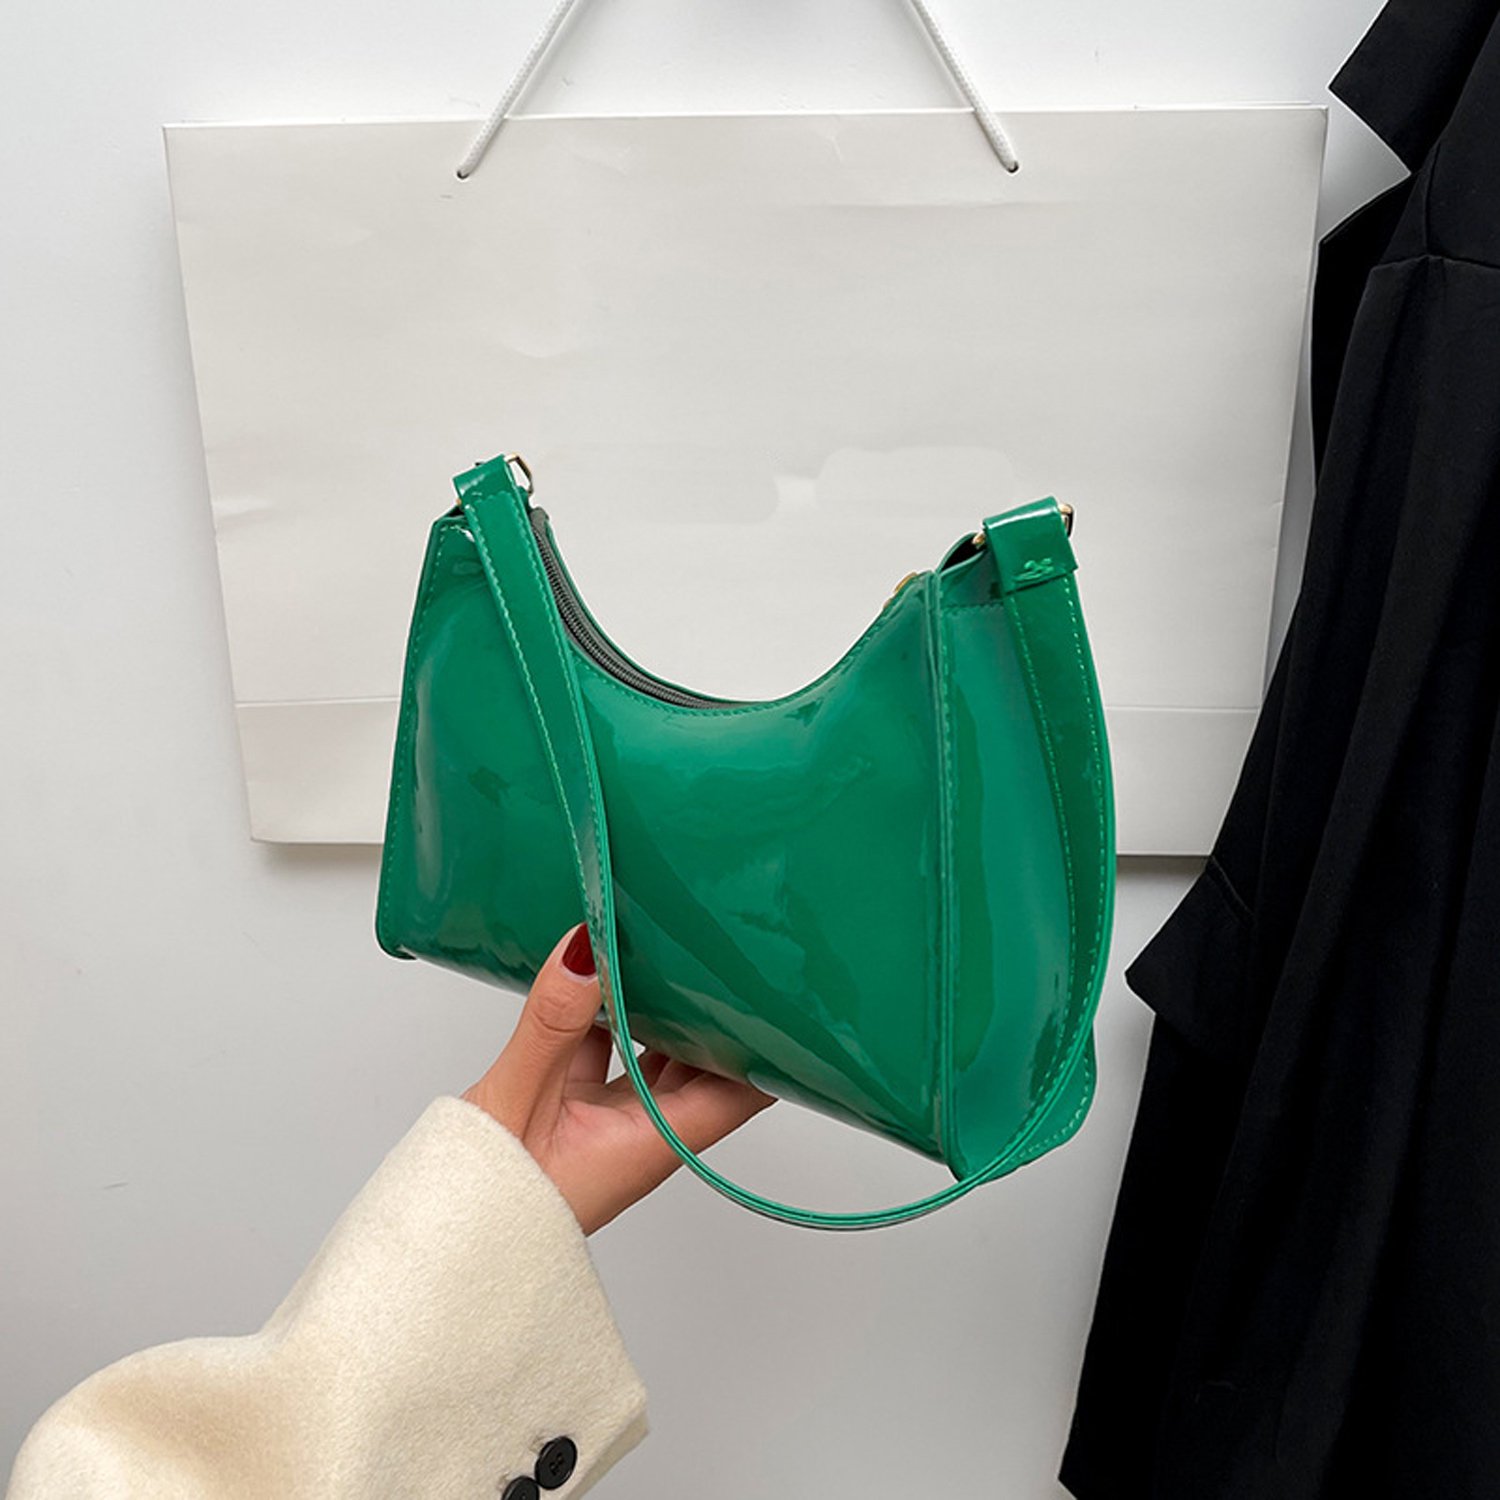 Green Tapa Cloth - Shoulder Bag - Purse - Handbag - Clutch